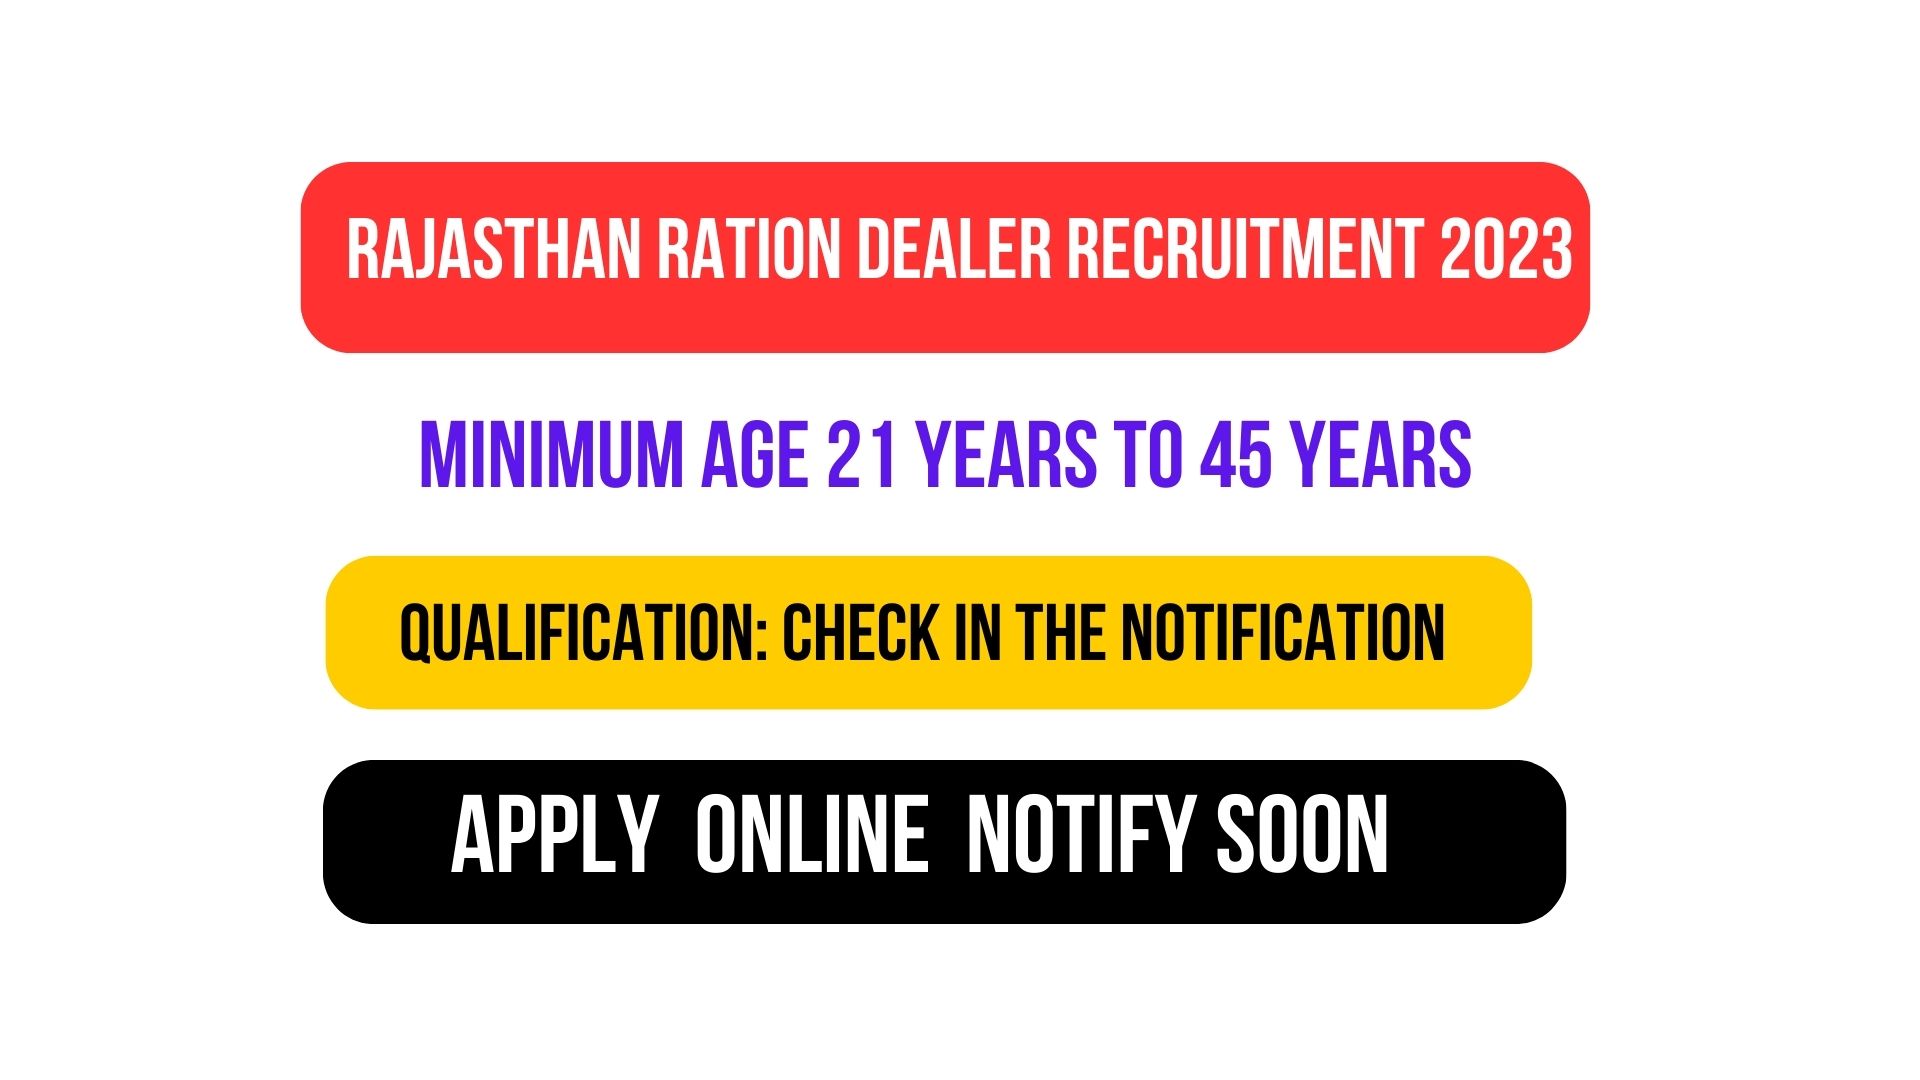 Rajasthan Ration Dealer